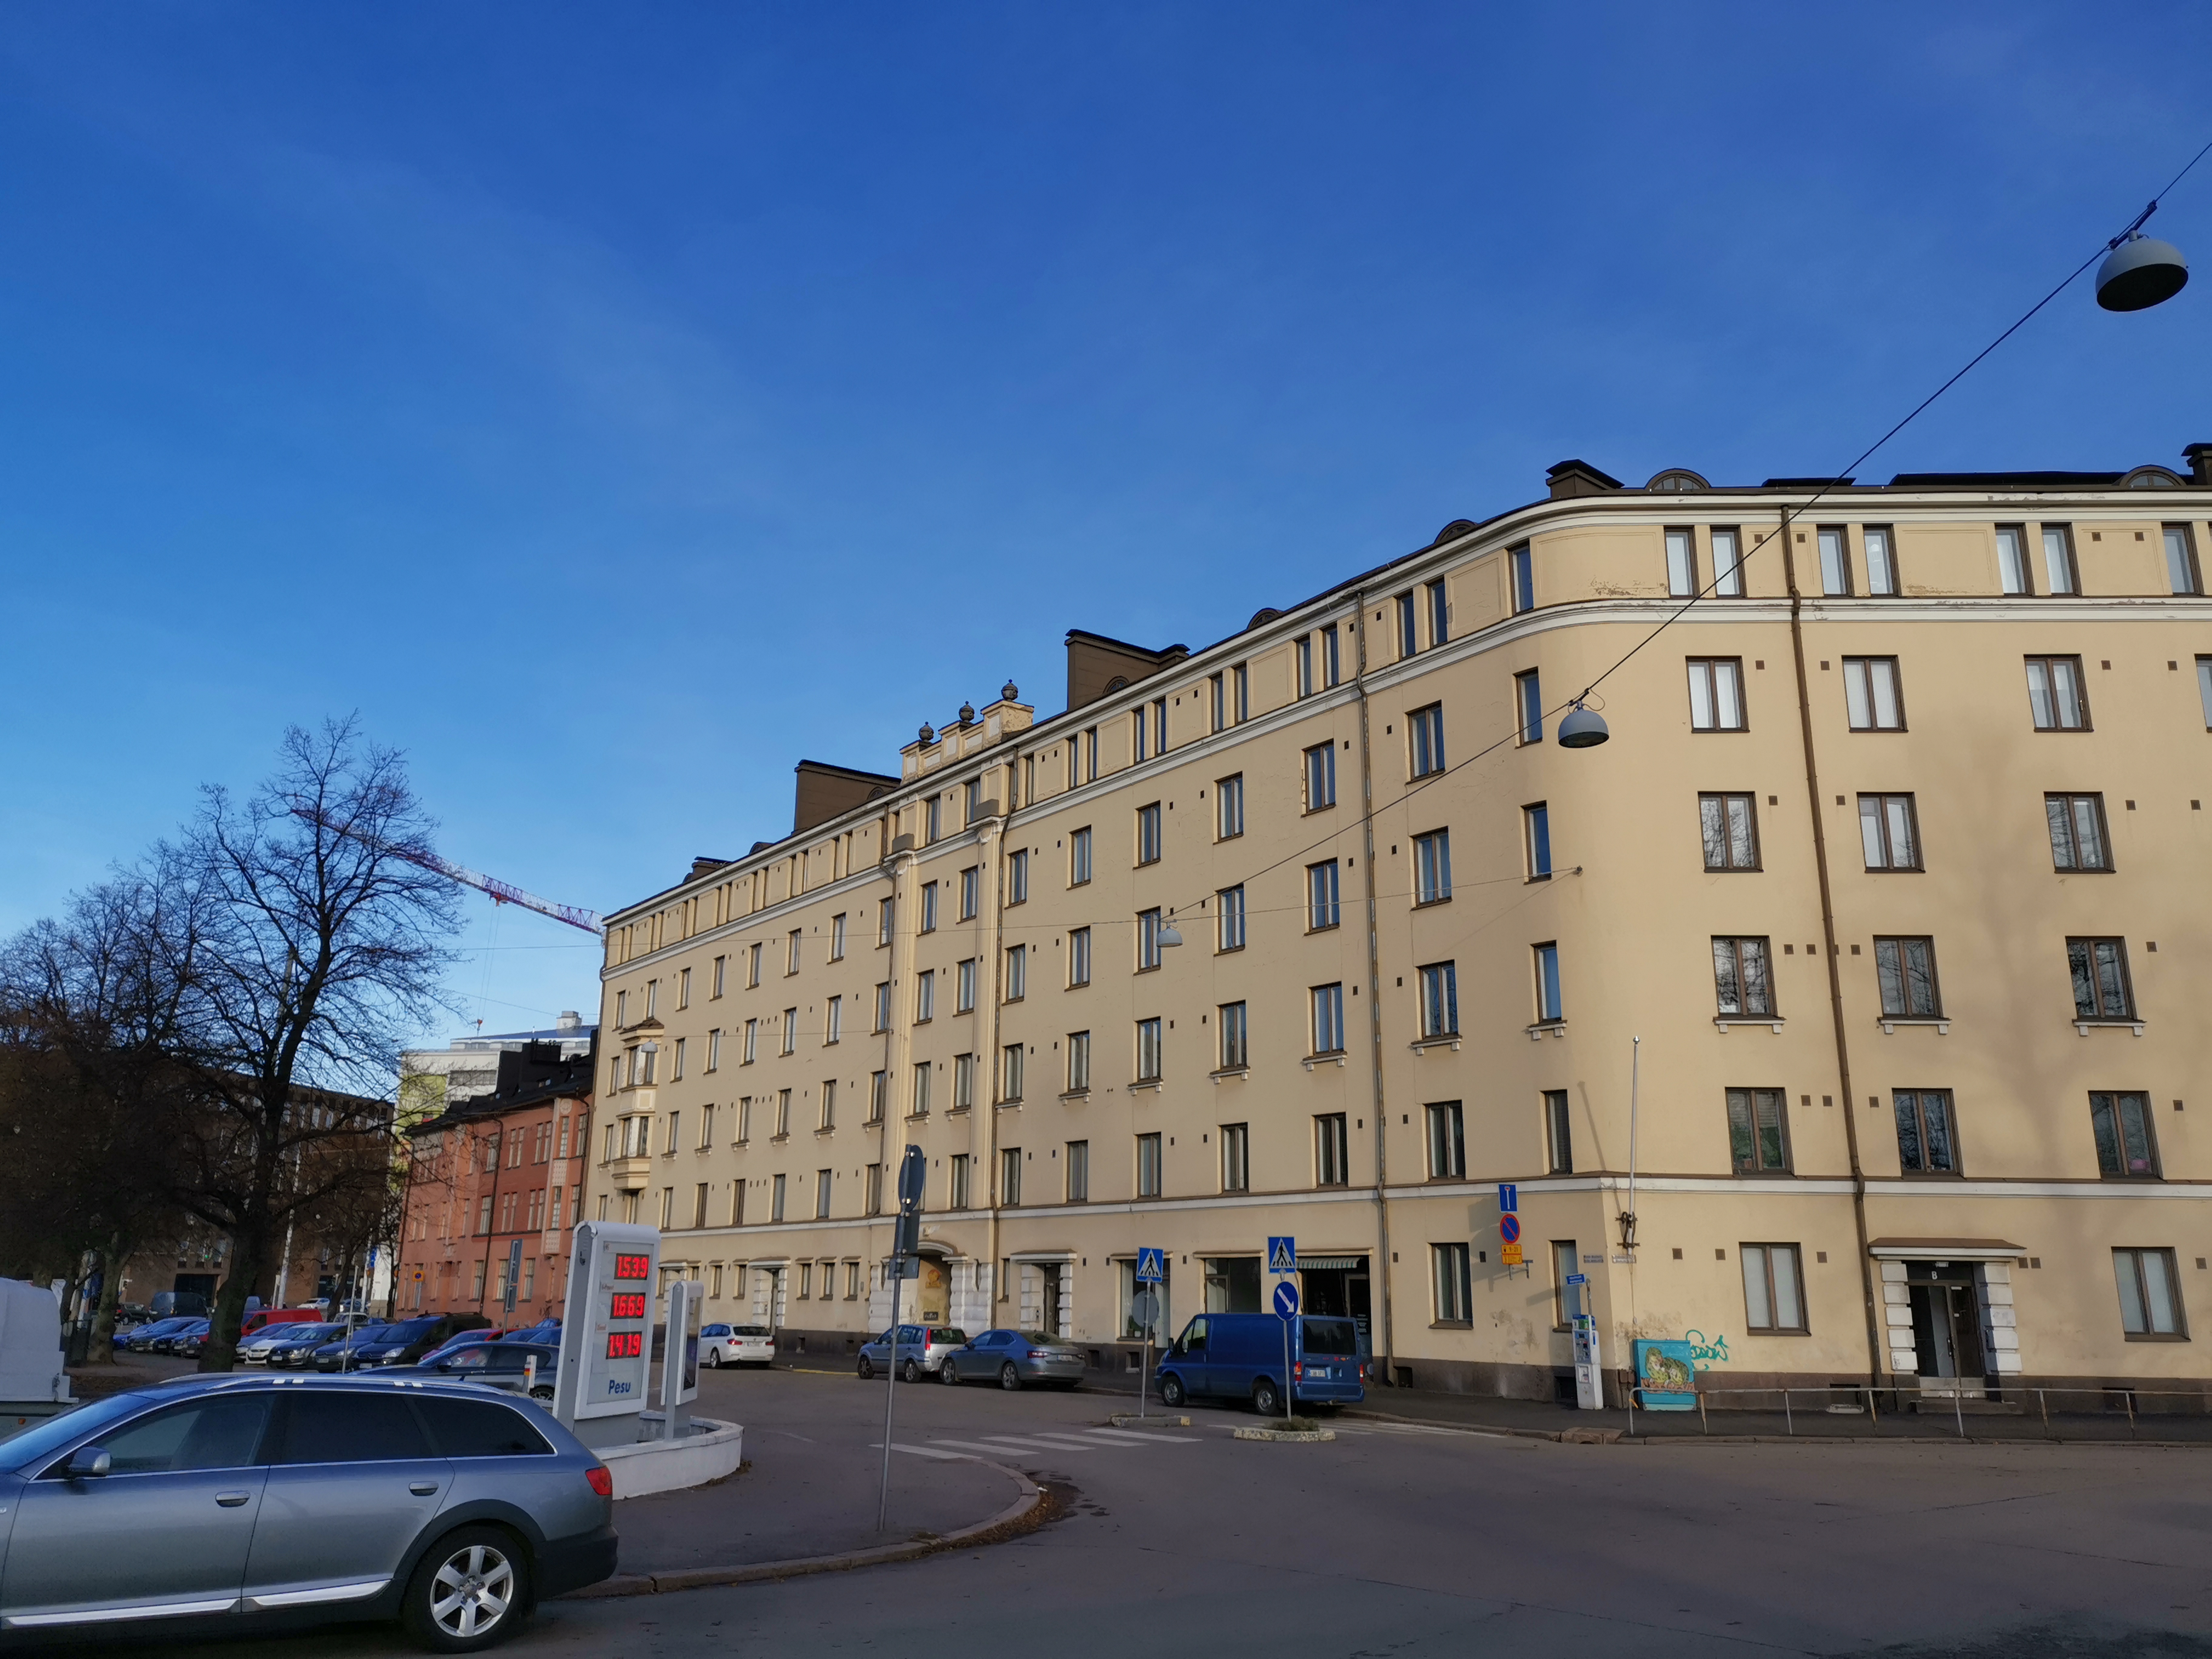 Asunto Oy Brahen taloa rakennetaan, Itäinen Brahenkatu 11. - Porvoonkatu 11 - 13. rephoto